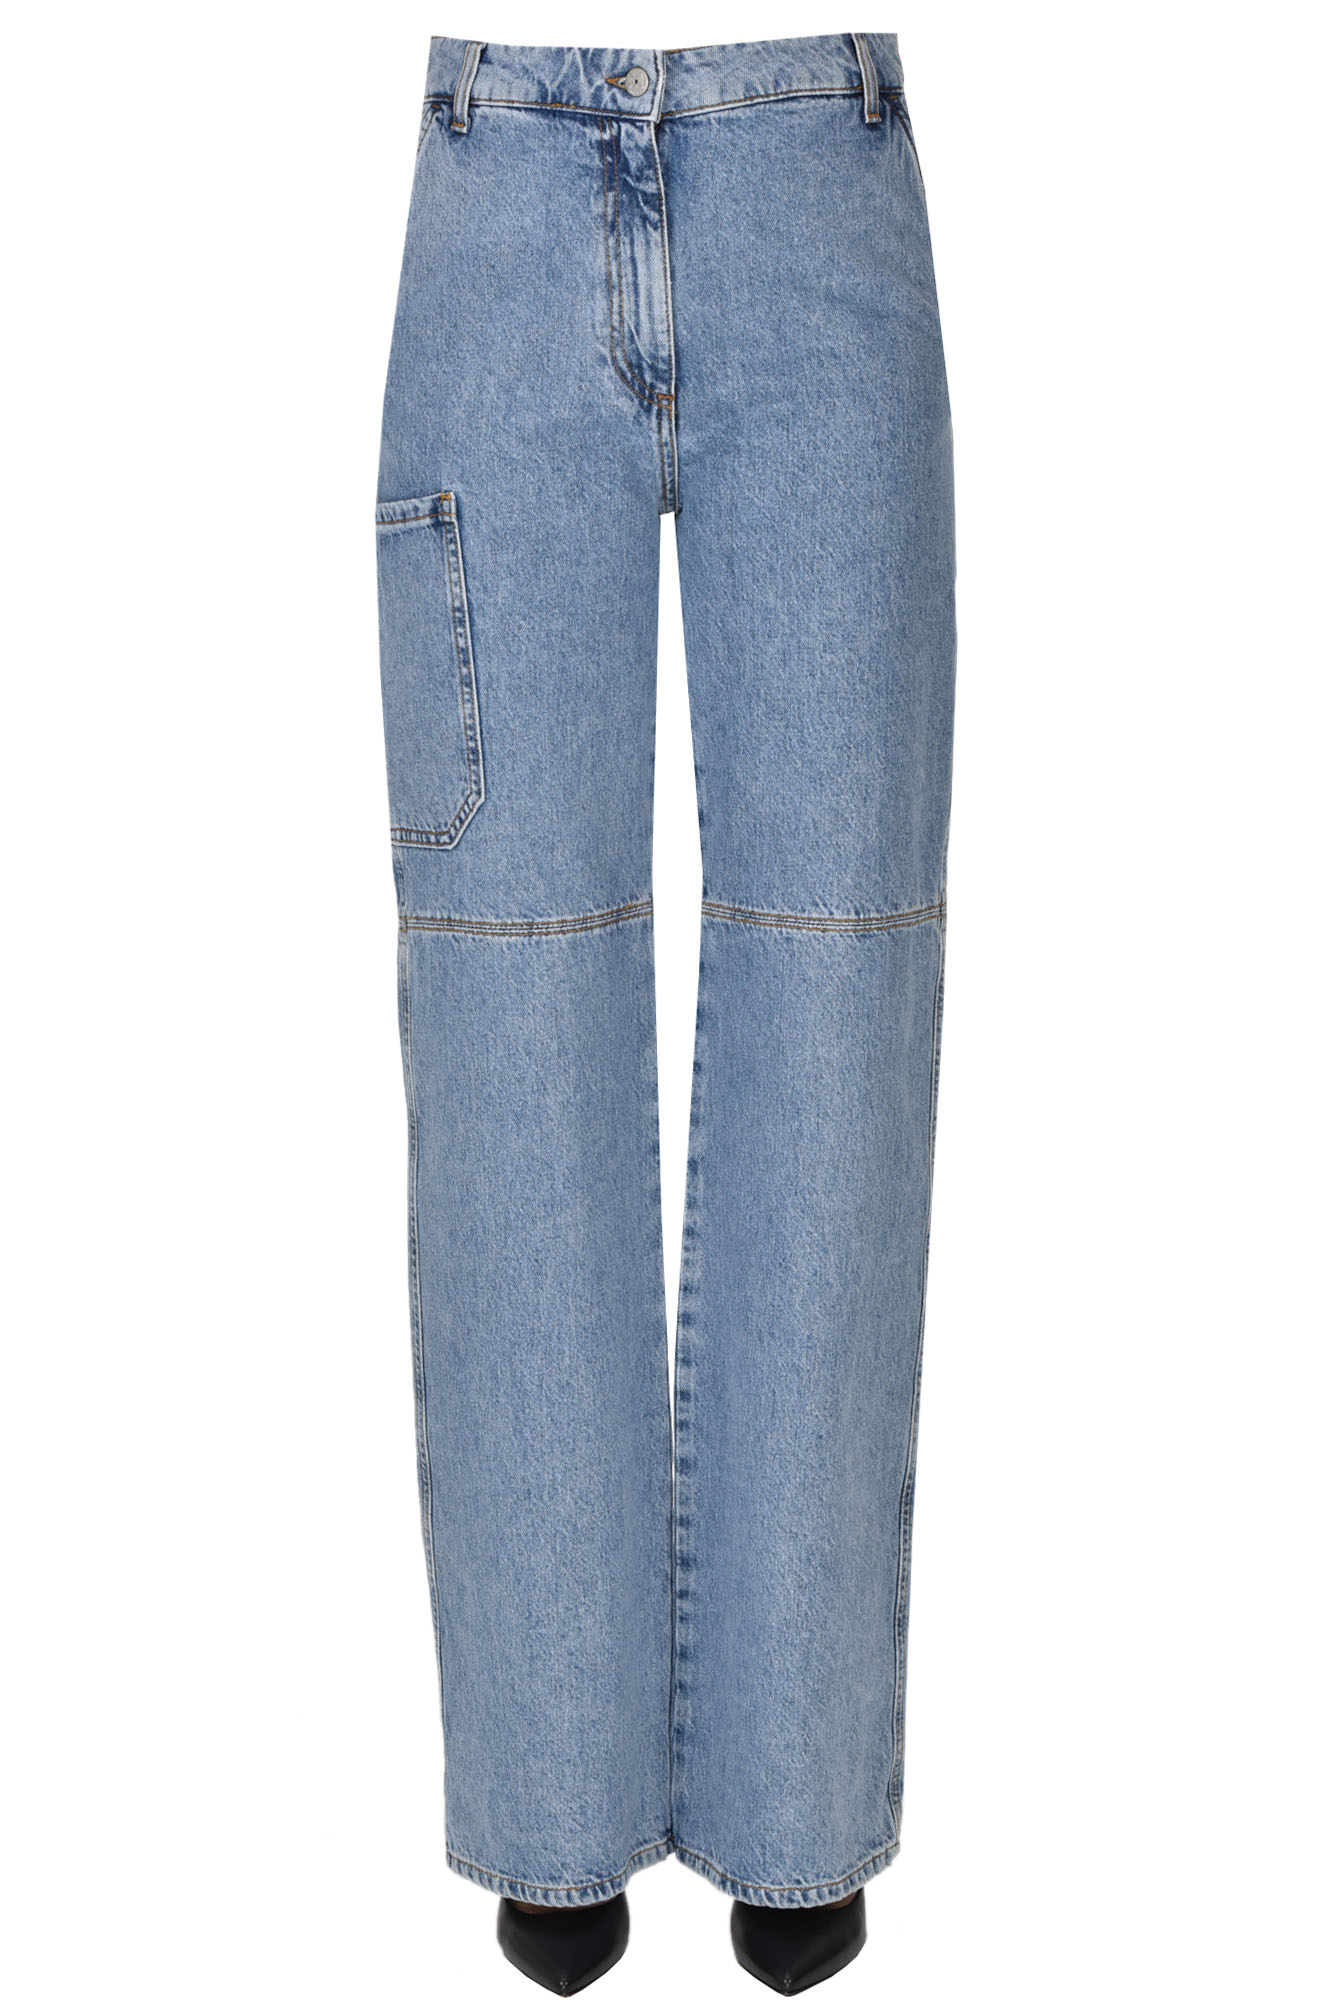 Bellerose Musdea Carpenter Style Jeans In Light Denim